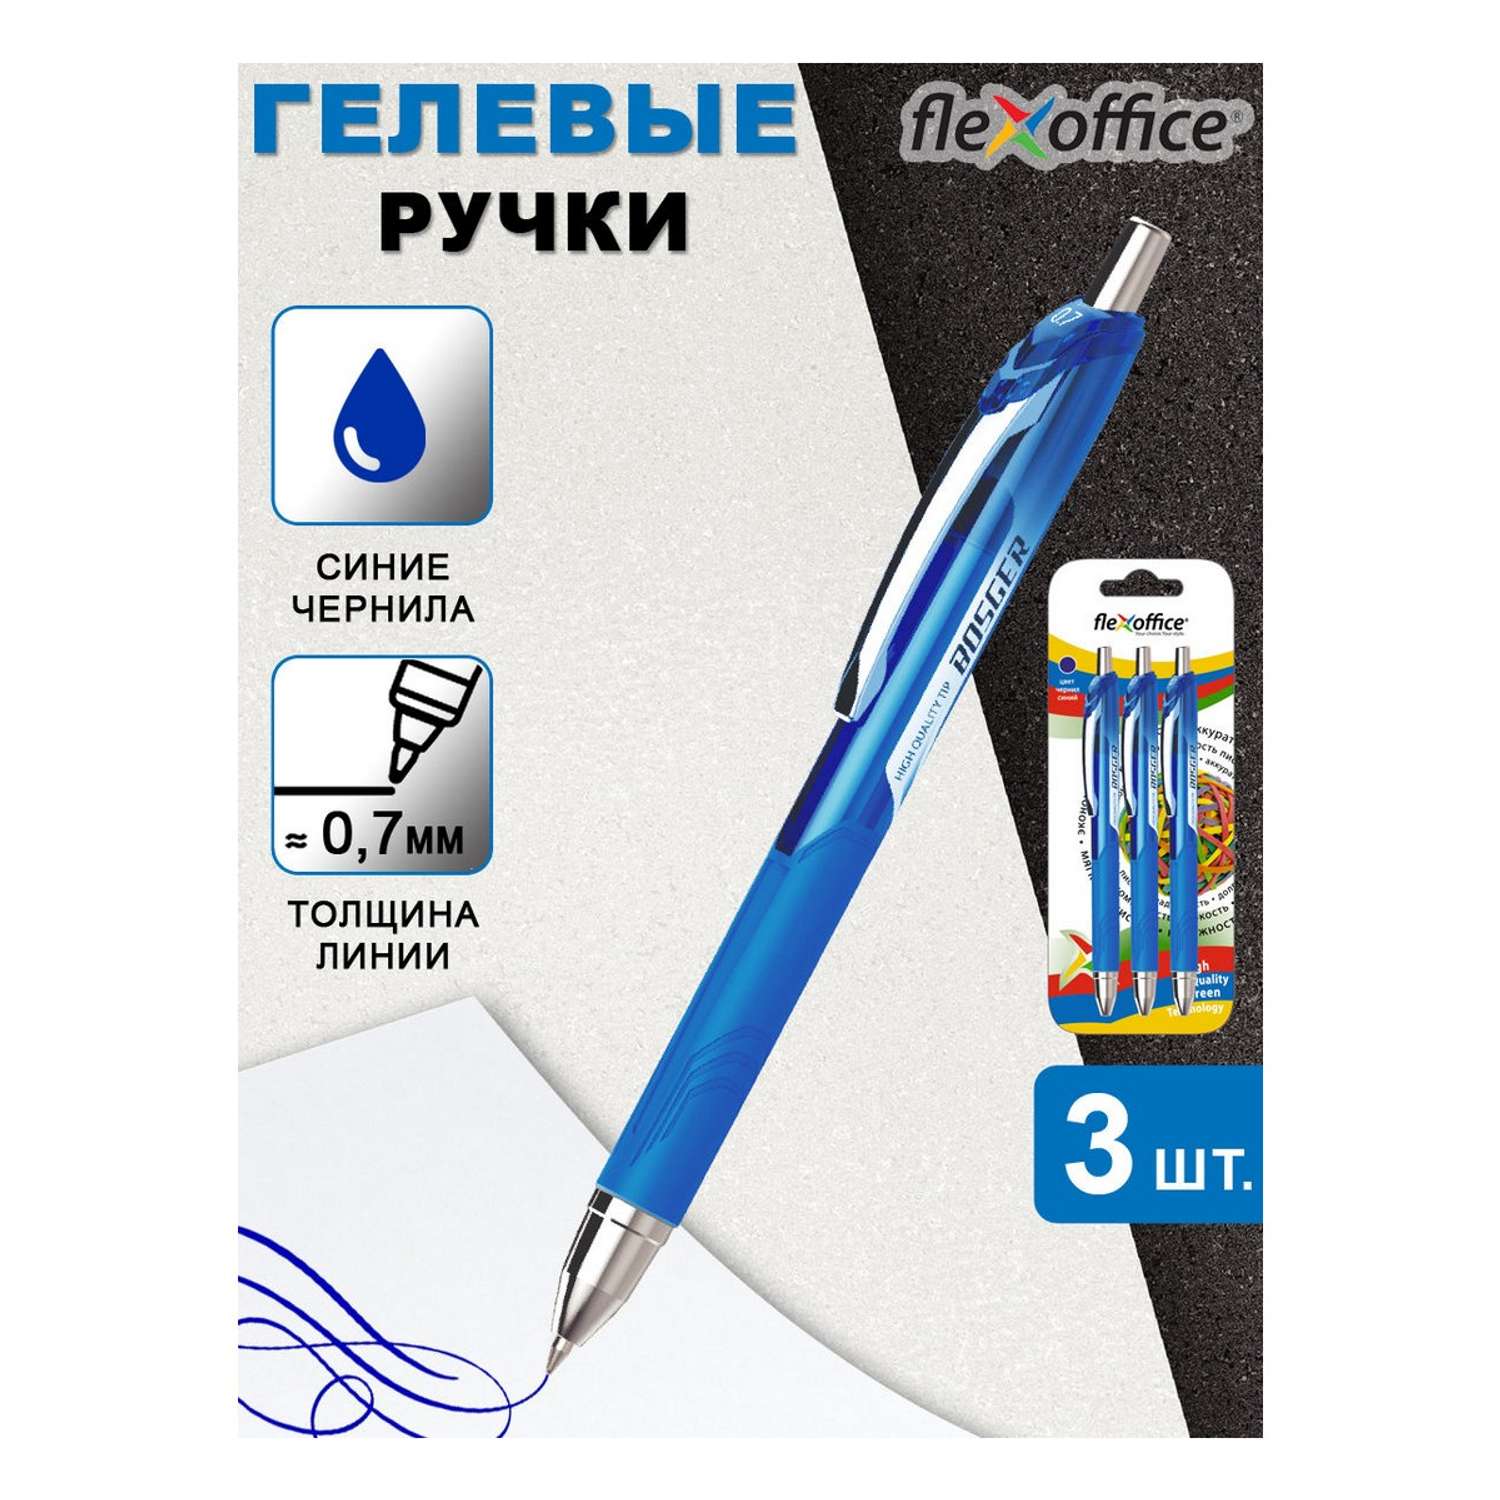 Ручка гелевая Flexoffice BIZNER BOSGER автоматическая 0.7 мм синяя 3шт в блистере - фото 2